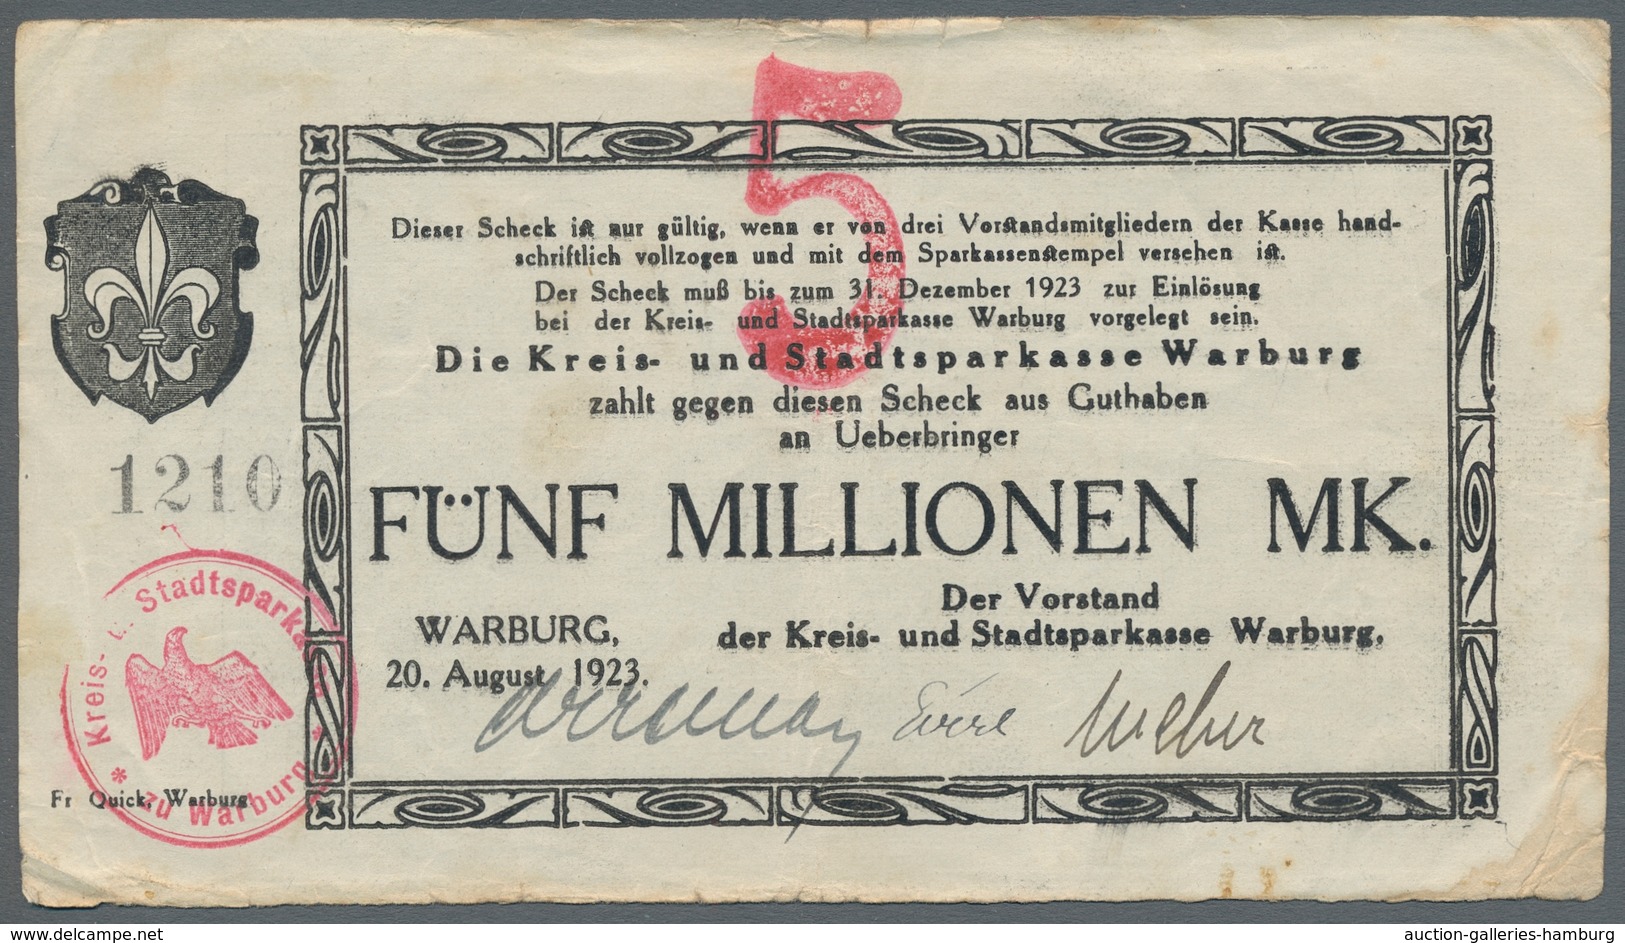 Deutschland - Notgeld: 1914-1923, Sammlung von etwa 250 deutschen Notgeldscheinen in einem Einsteckb